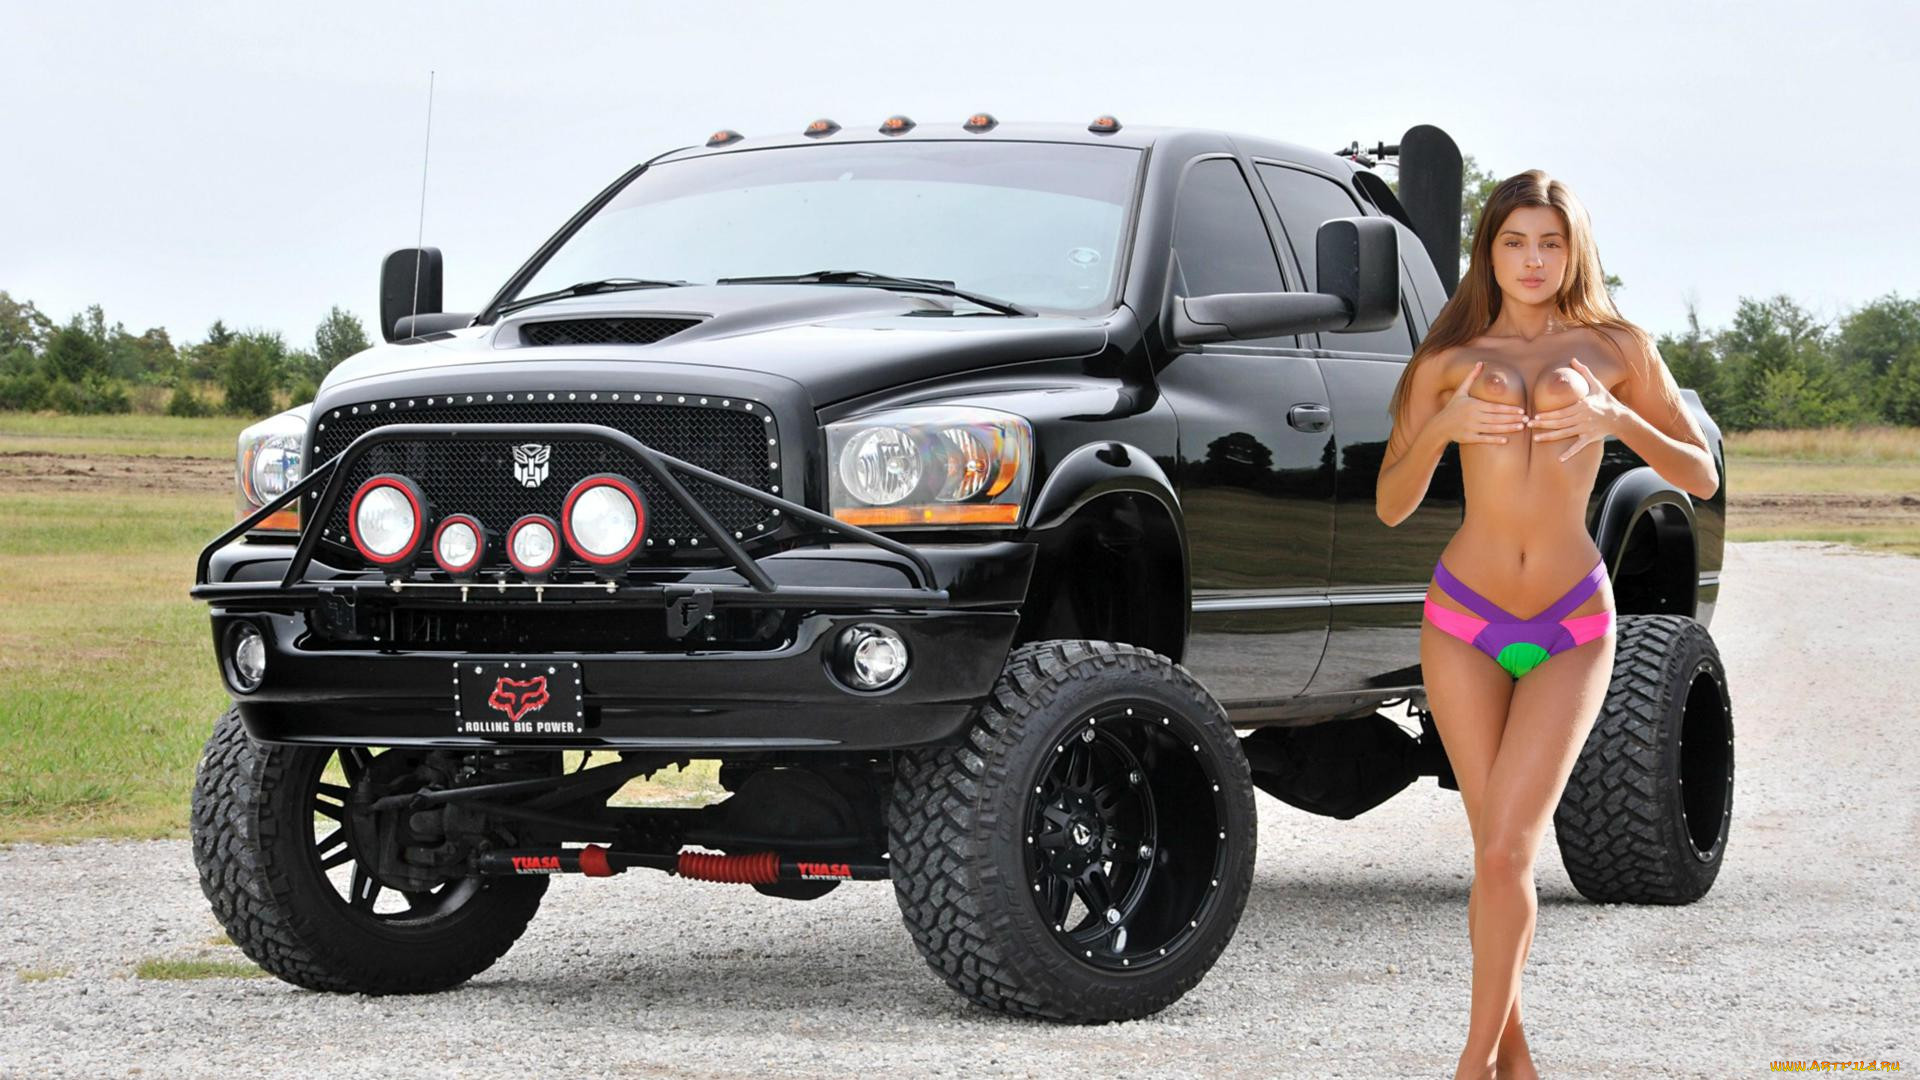 Babe bikini truck